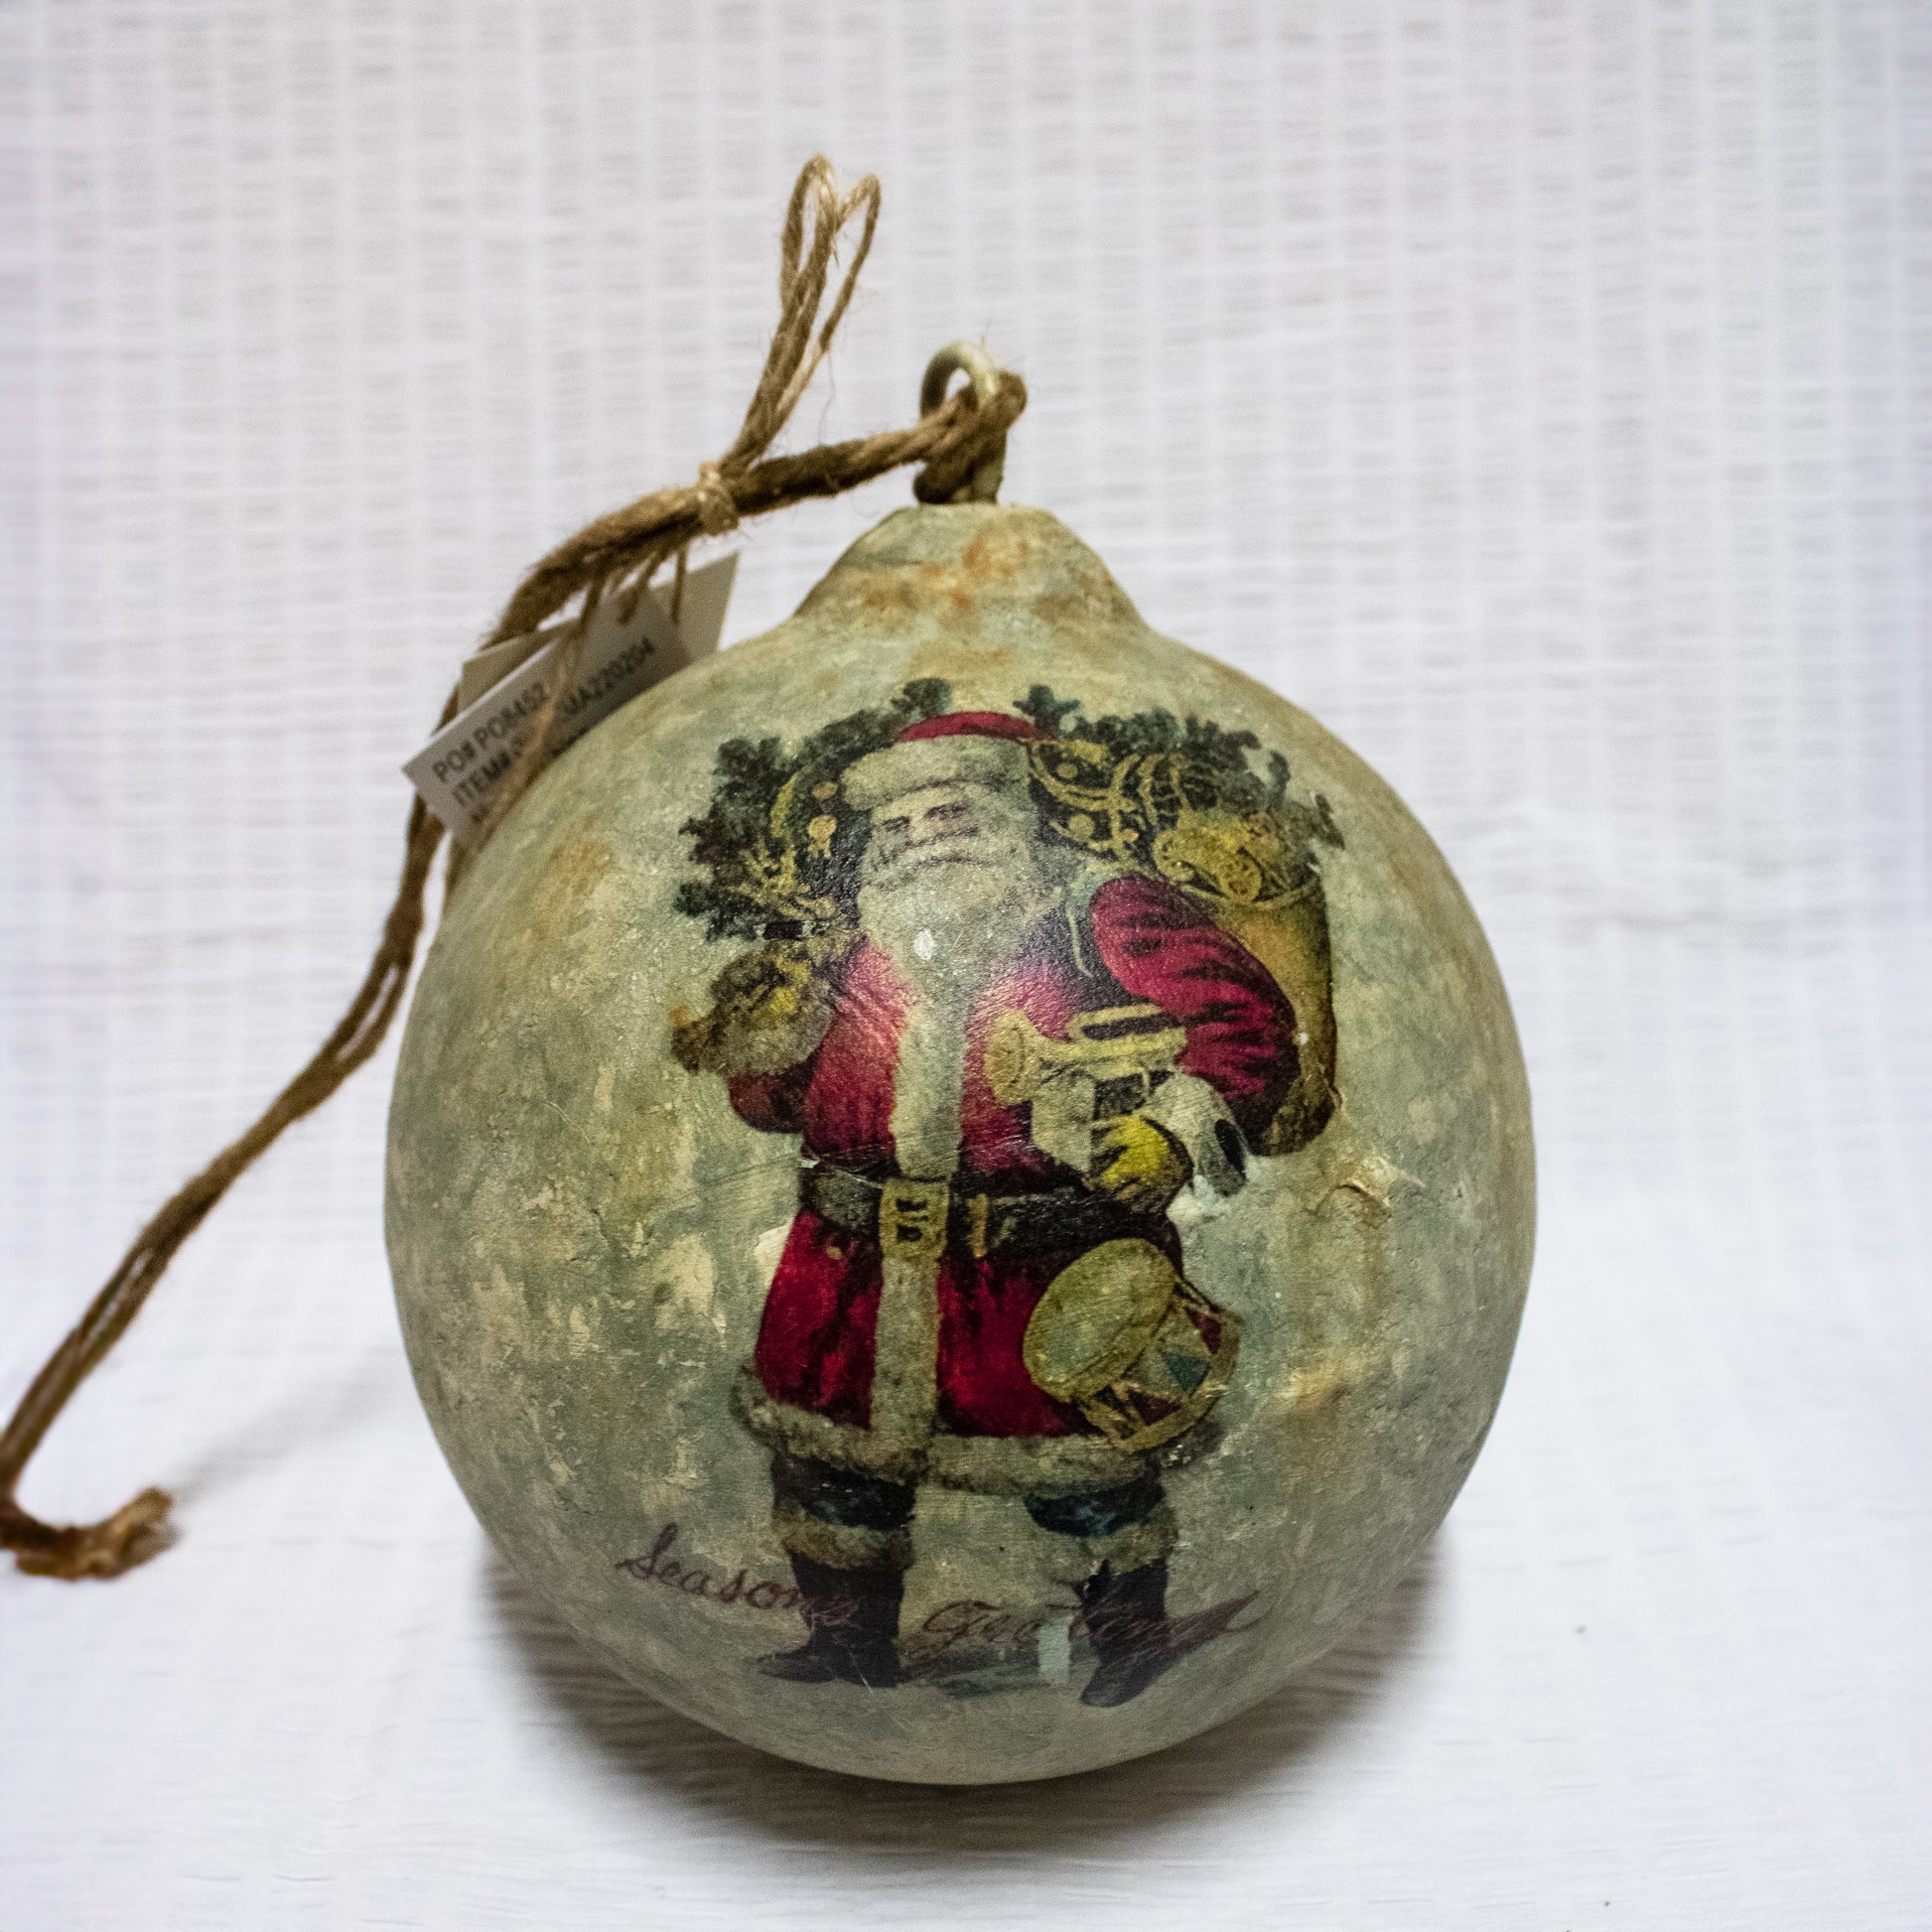 6” Glass Vintage Santa Bearing Gifts Ball Ornament